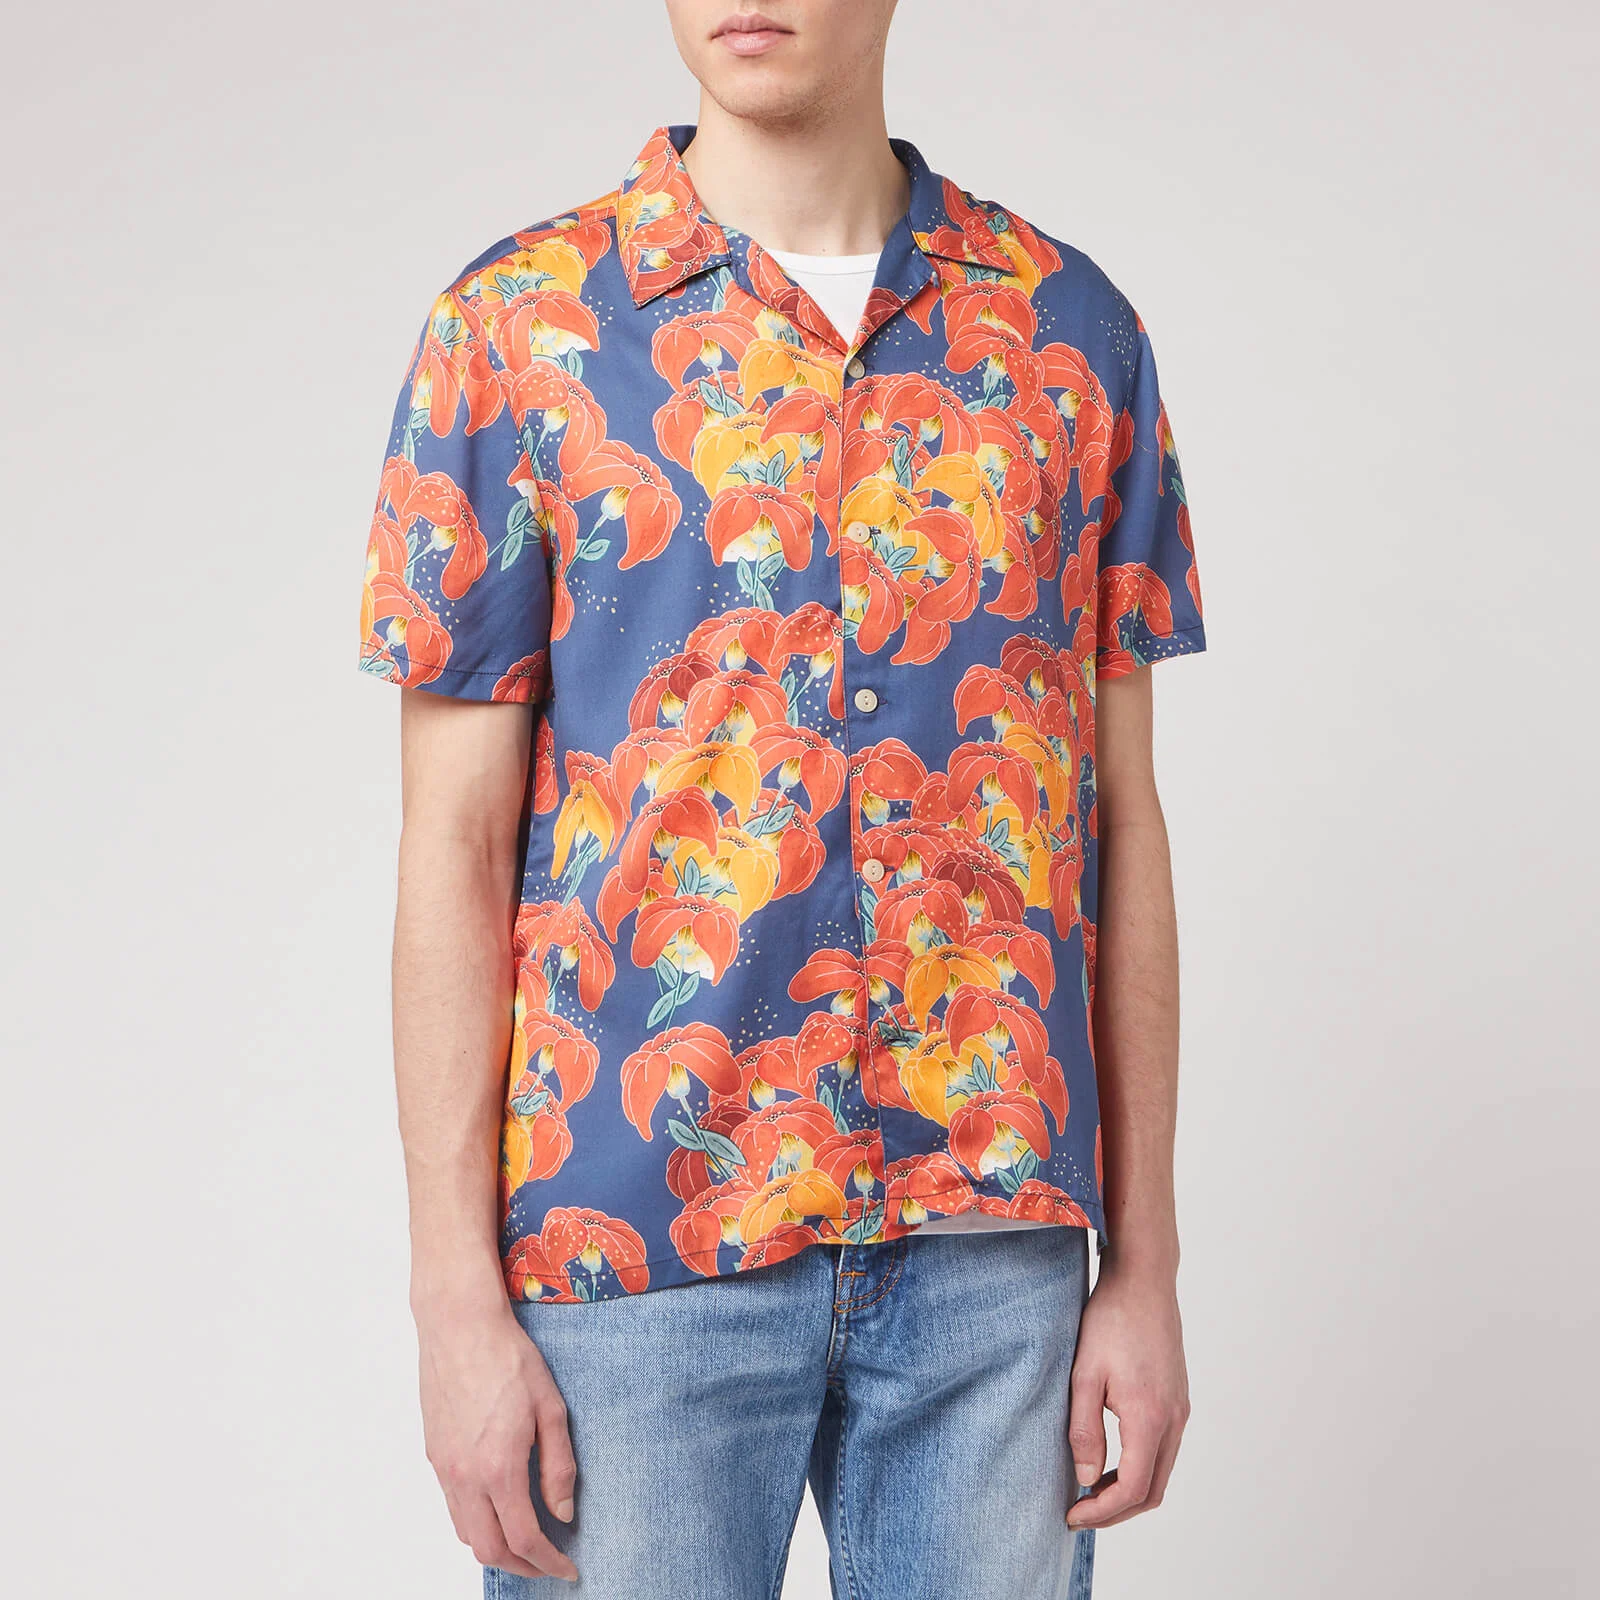 Nudie Jeans Men's Arvid Flowers Short Sleeve Shirt - Multi Image 1